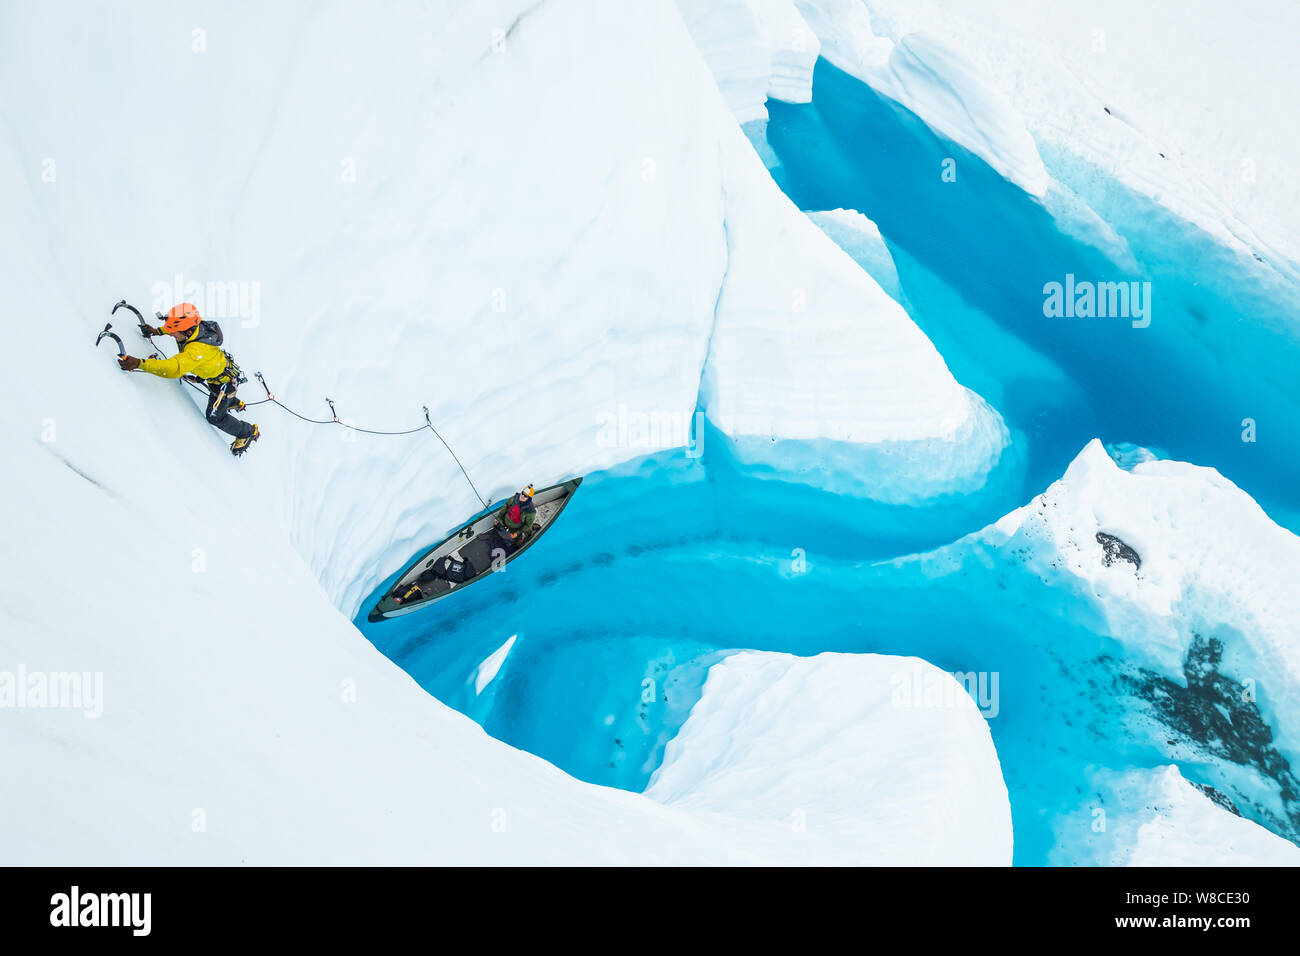 Jeune homme l'escalade de glace sur la tête de file d'un canot sur l'eau d'un lac Glacier Matanuska en Alaska. Banque D'Images